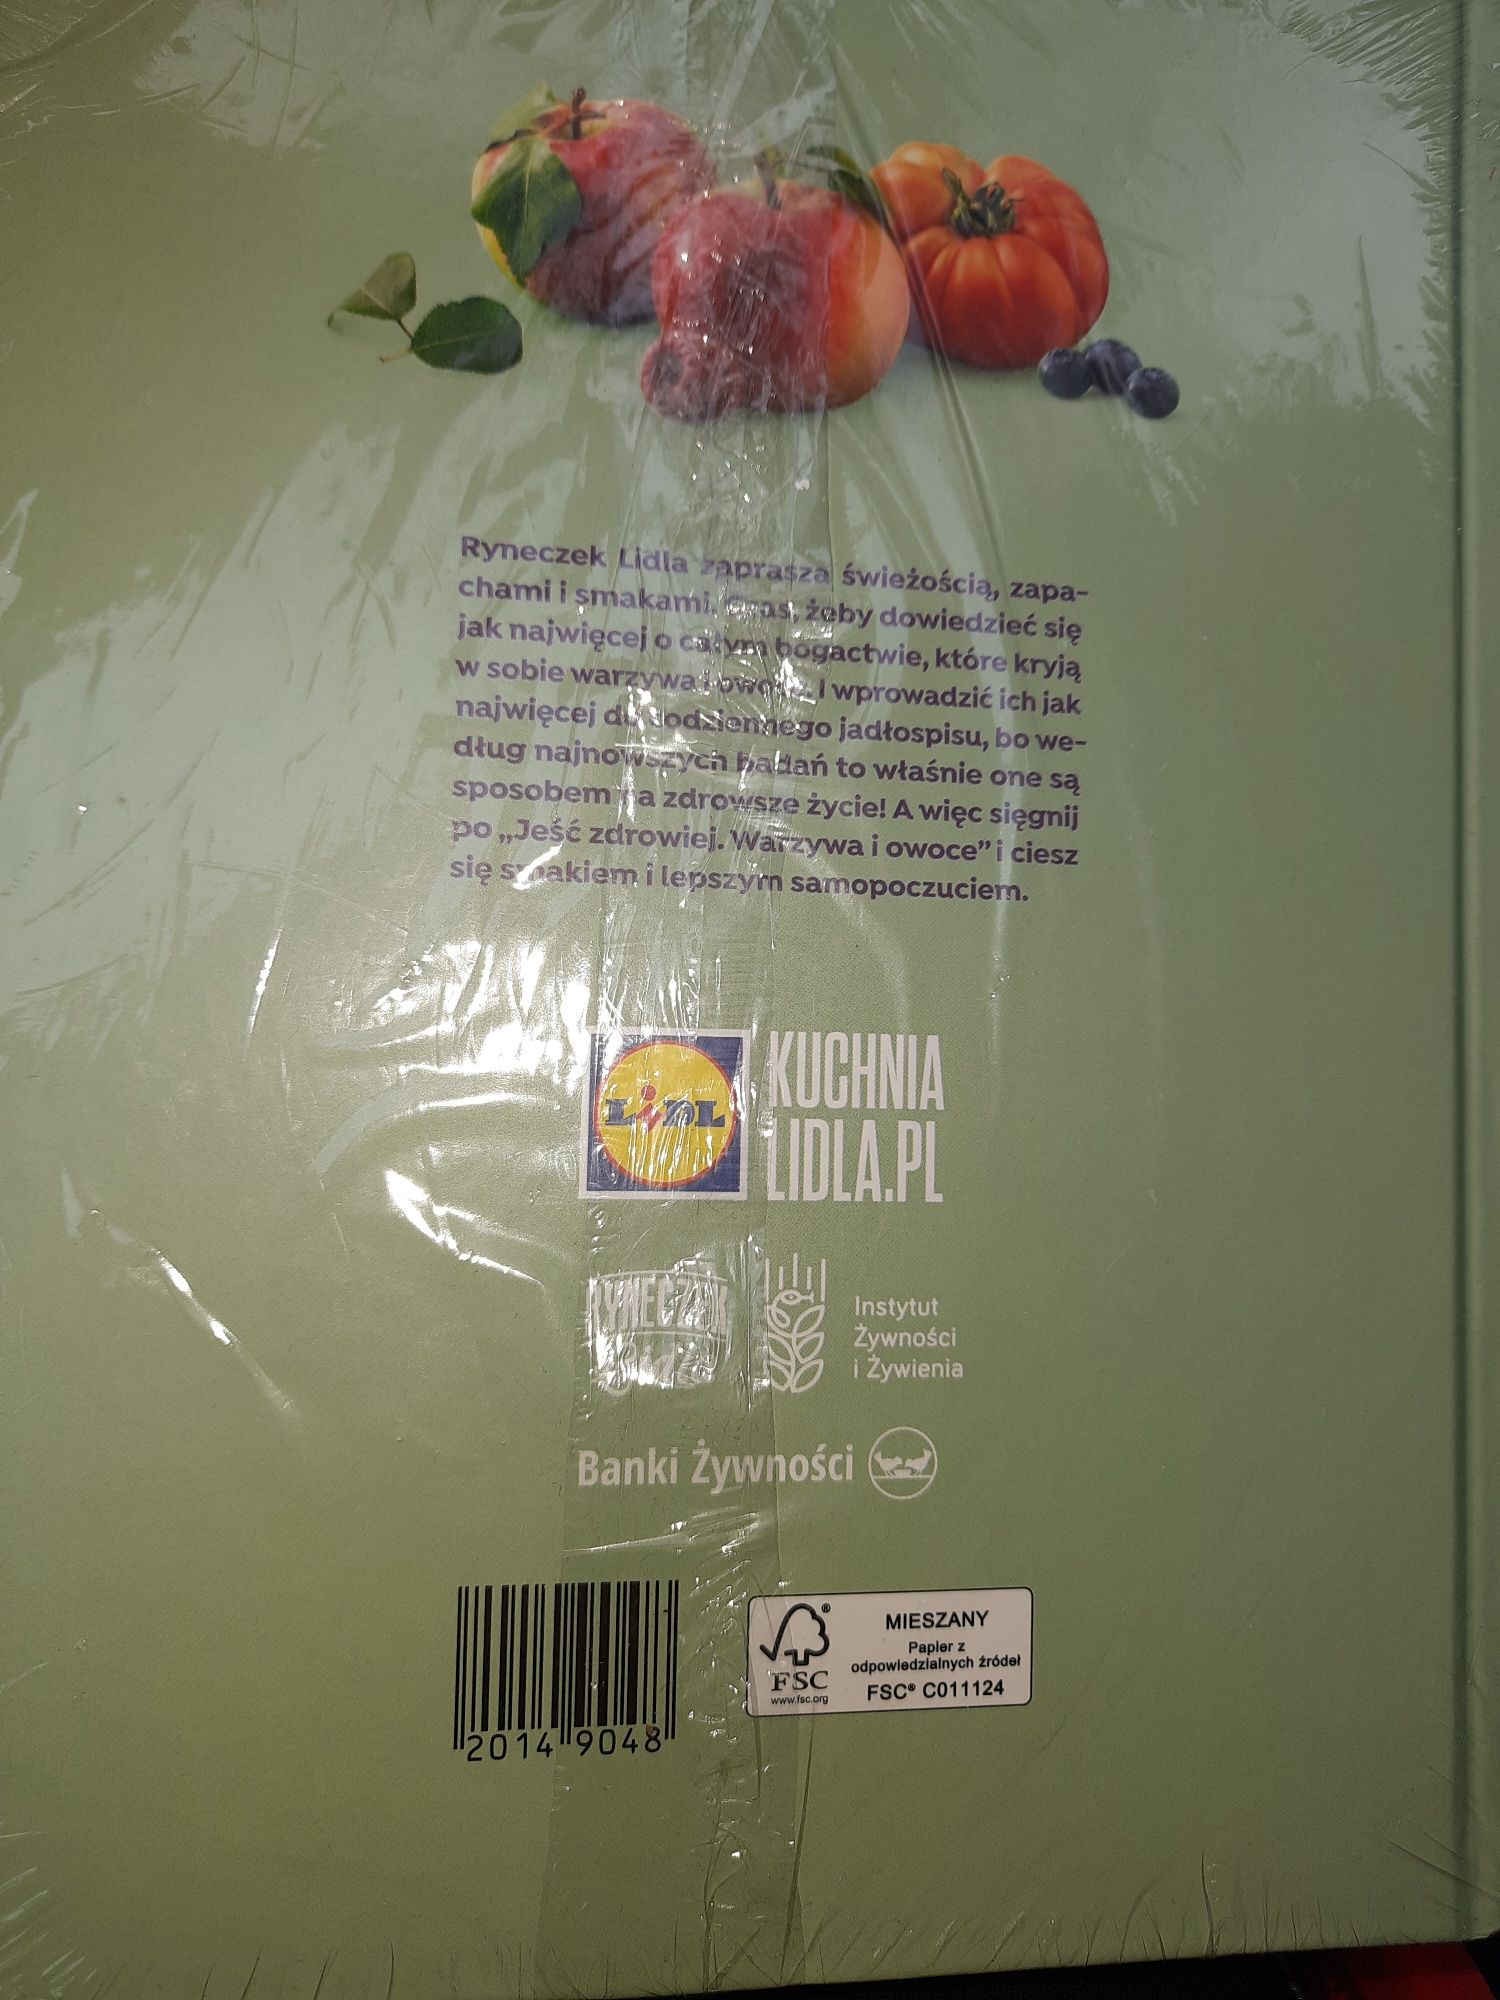 Kuchnia Lidla - książka kucharska nowa - Jeść zdrowiej warzywa i owoce